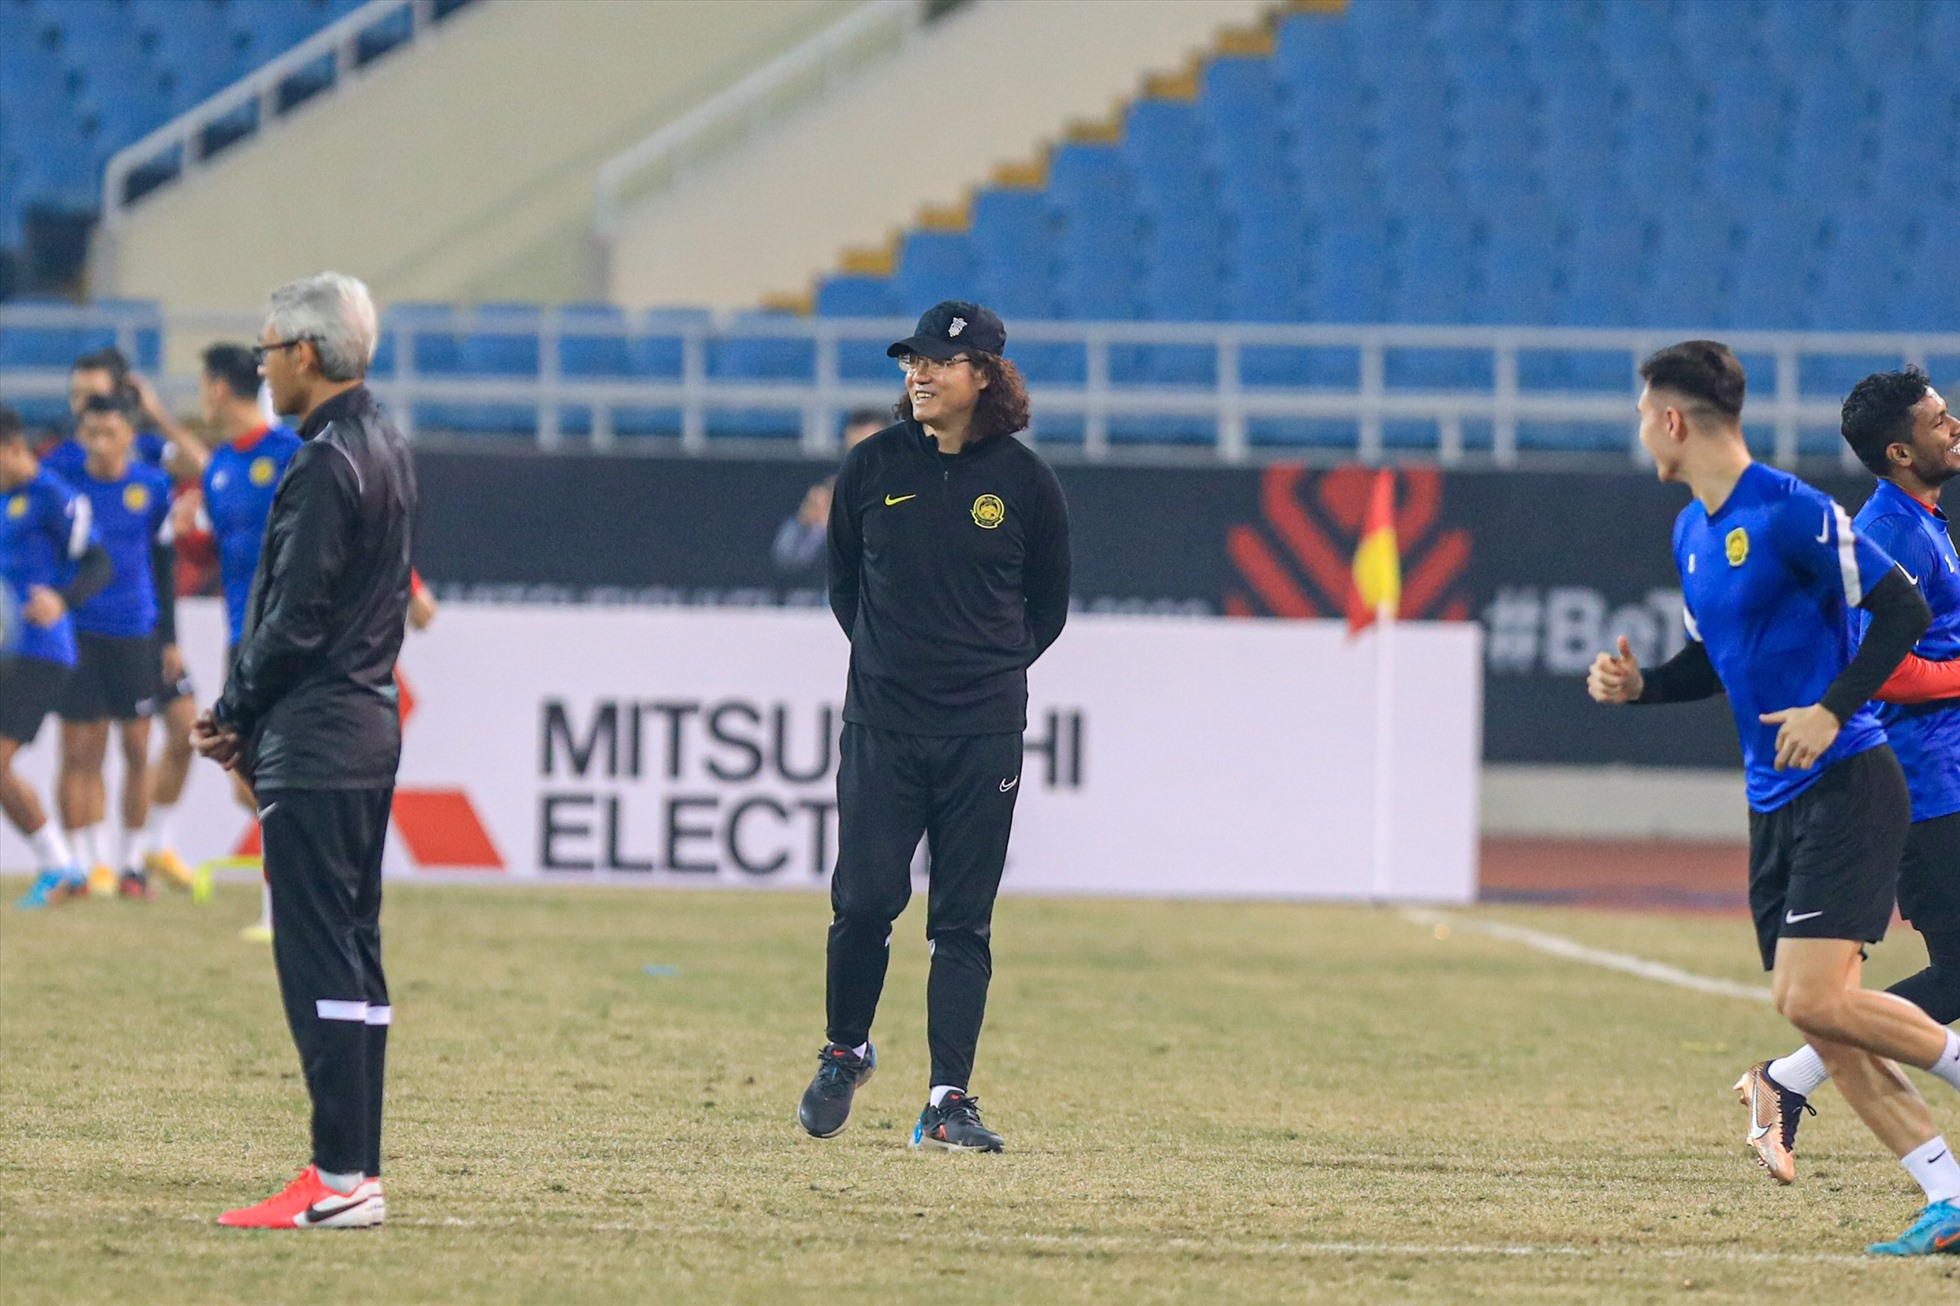 Huấn luyện viên Kim Pan Gon có trong tay nhiều phương án thay thế cho đội hình và đã sẵn sàng cho cuộc đối đầu với huấn luyện viên Park Hang-seo và đội tuyển Việt Nam.